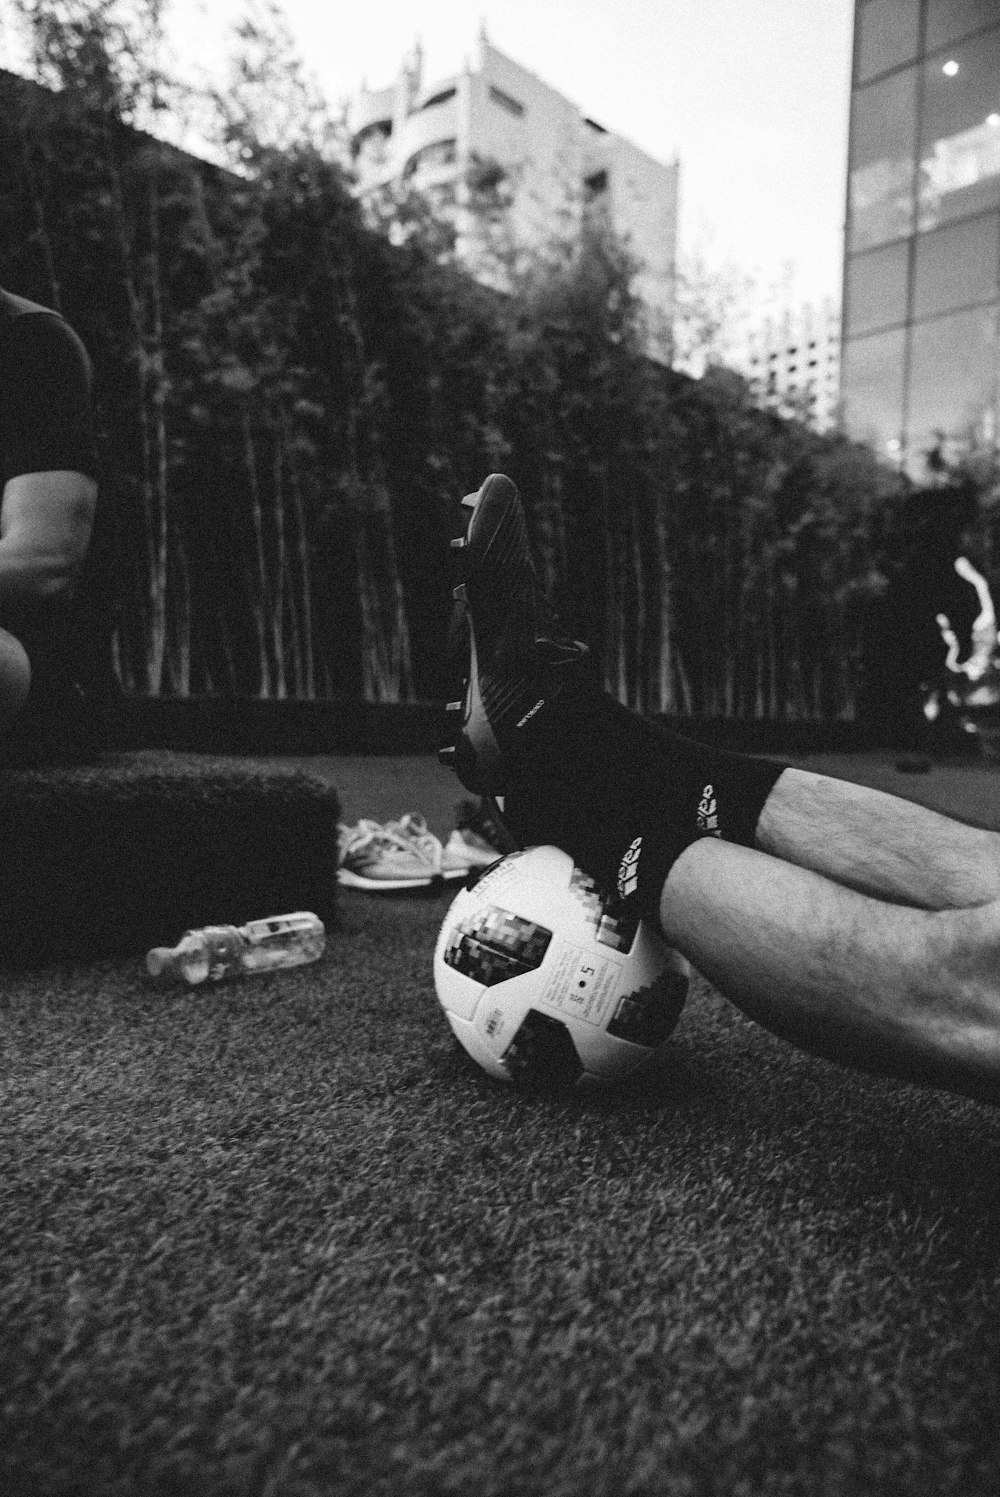 축구공에 사람의 발을 찍은 회색조 사진